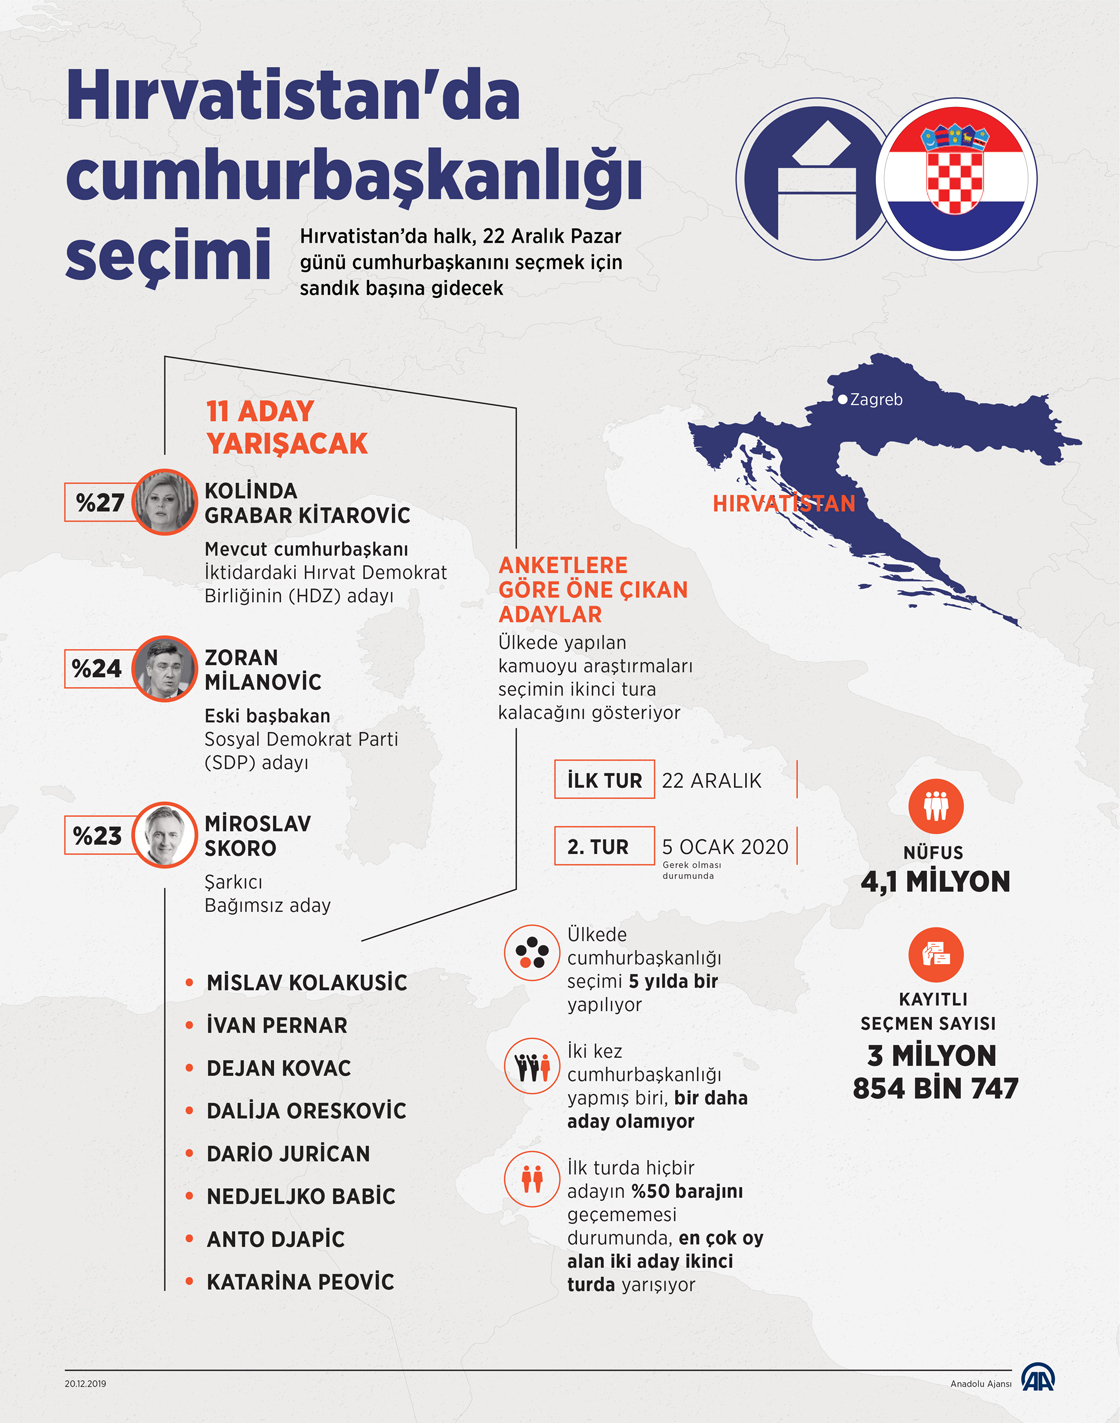 Hırvatistan'da cumhurbaşkanlığı seçimi